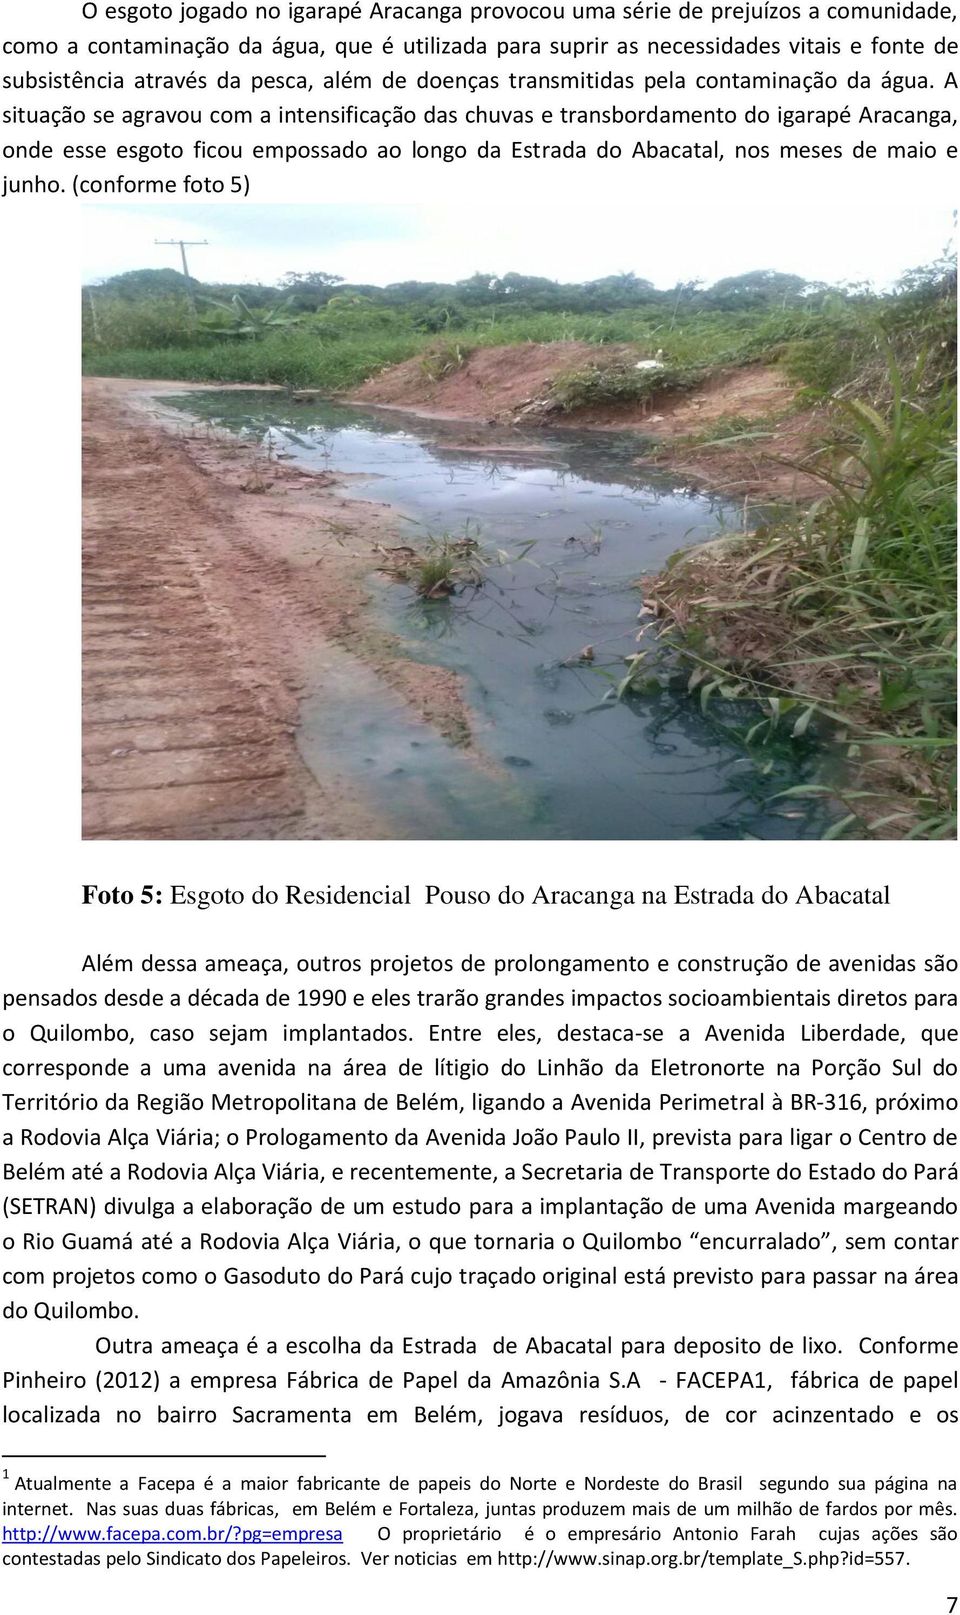 A situação se agravou com a intensificação das chuvas e transbordamento do igarapé Aracanga, onde esse esgoto ficou empossado ao longo da Estrada do Abacatal, nos meses de maio e junho.